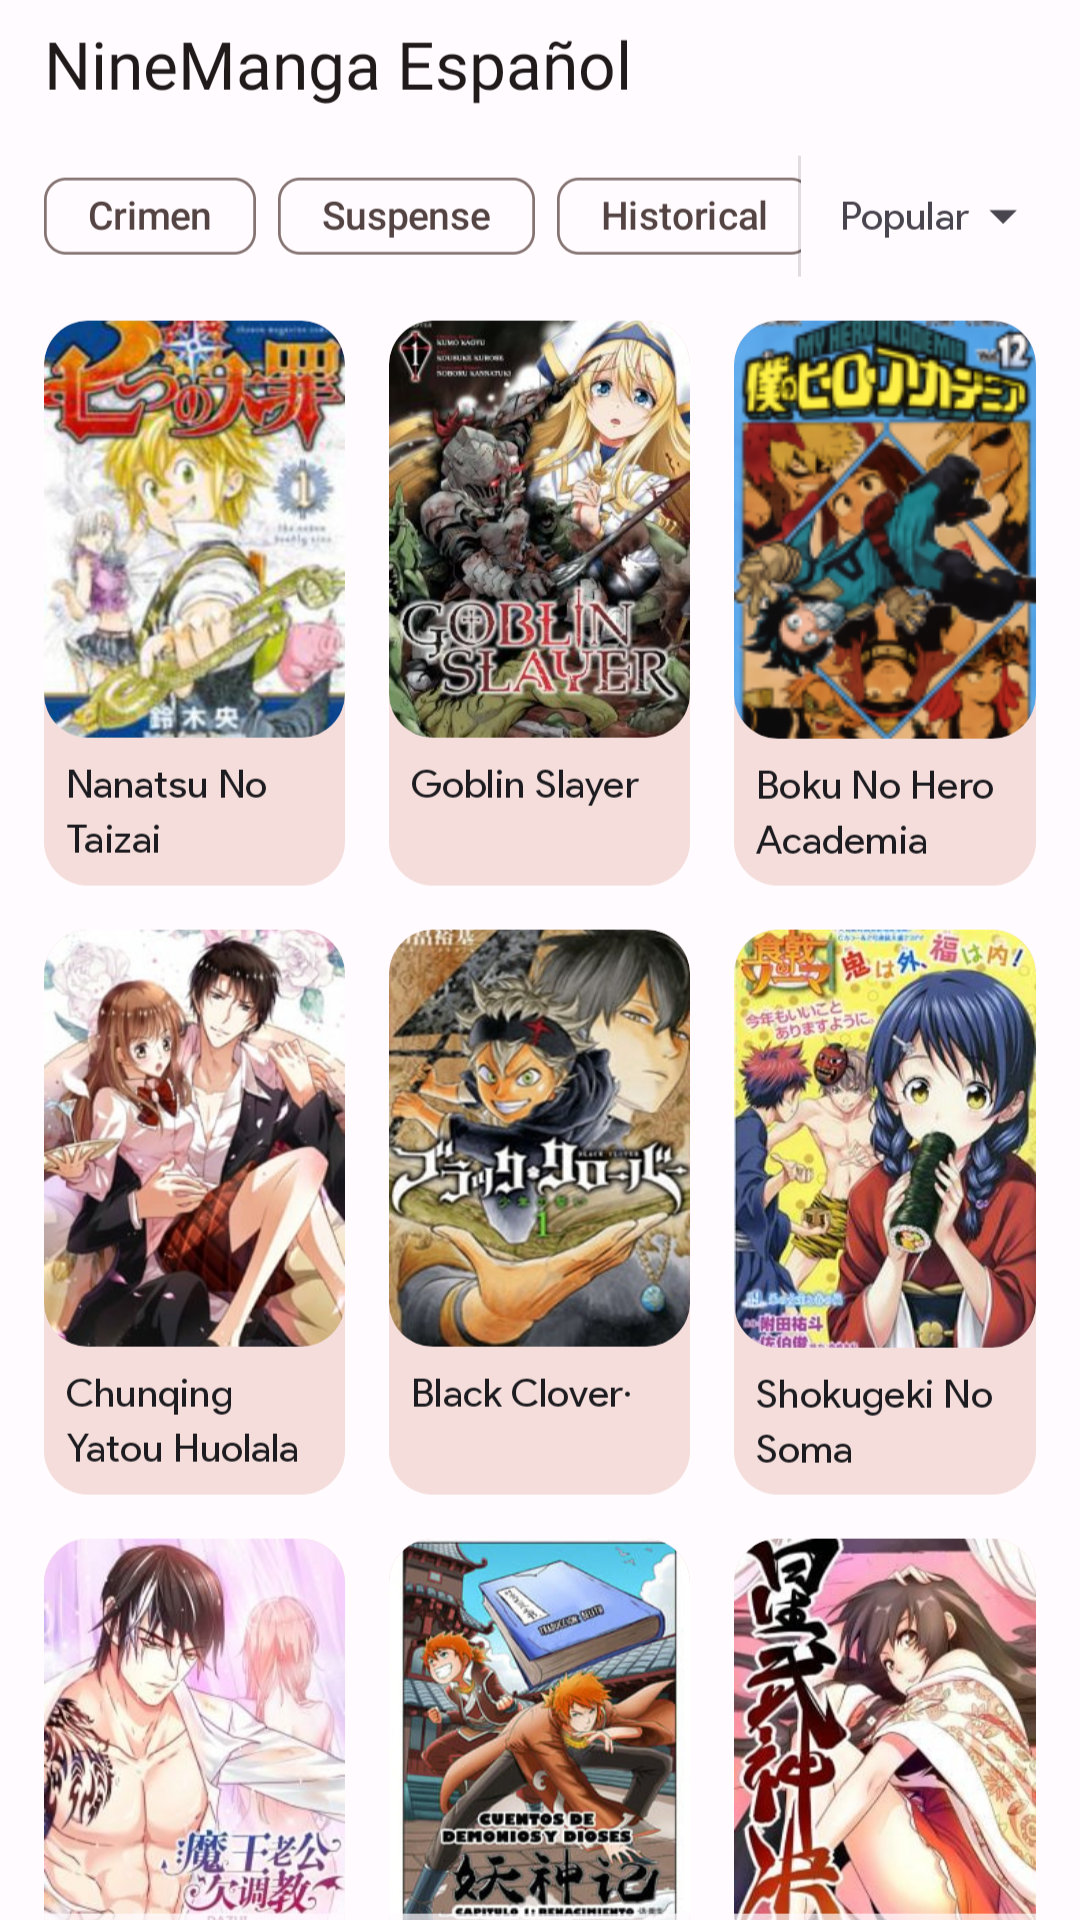 MangaGO - Manga App APK Download 2022 Free